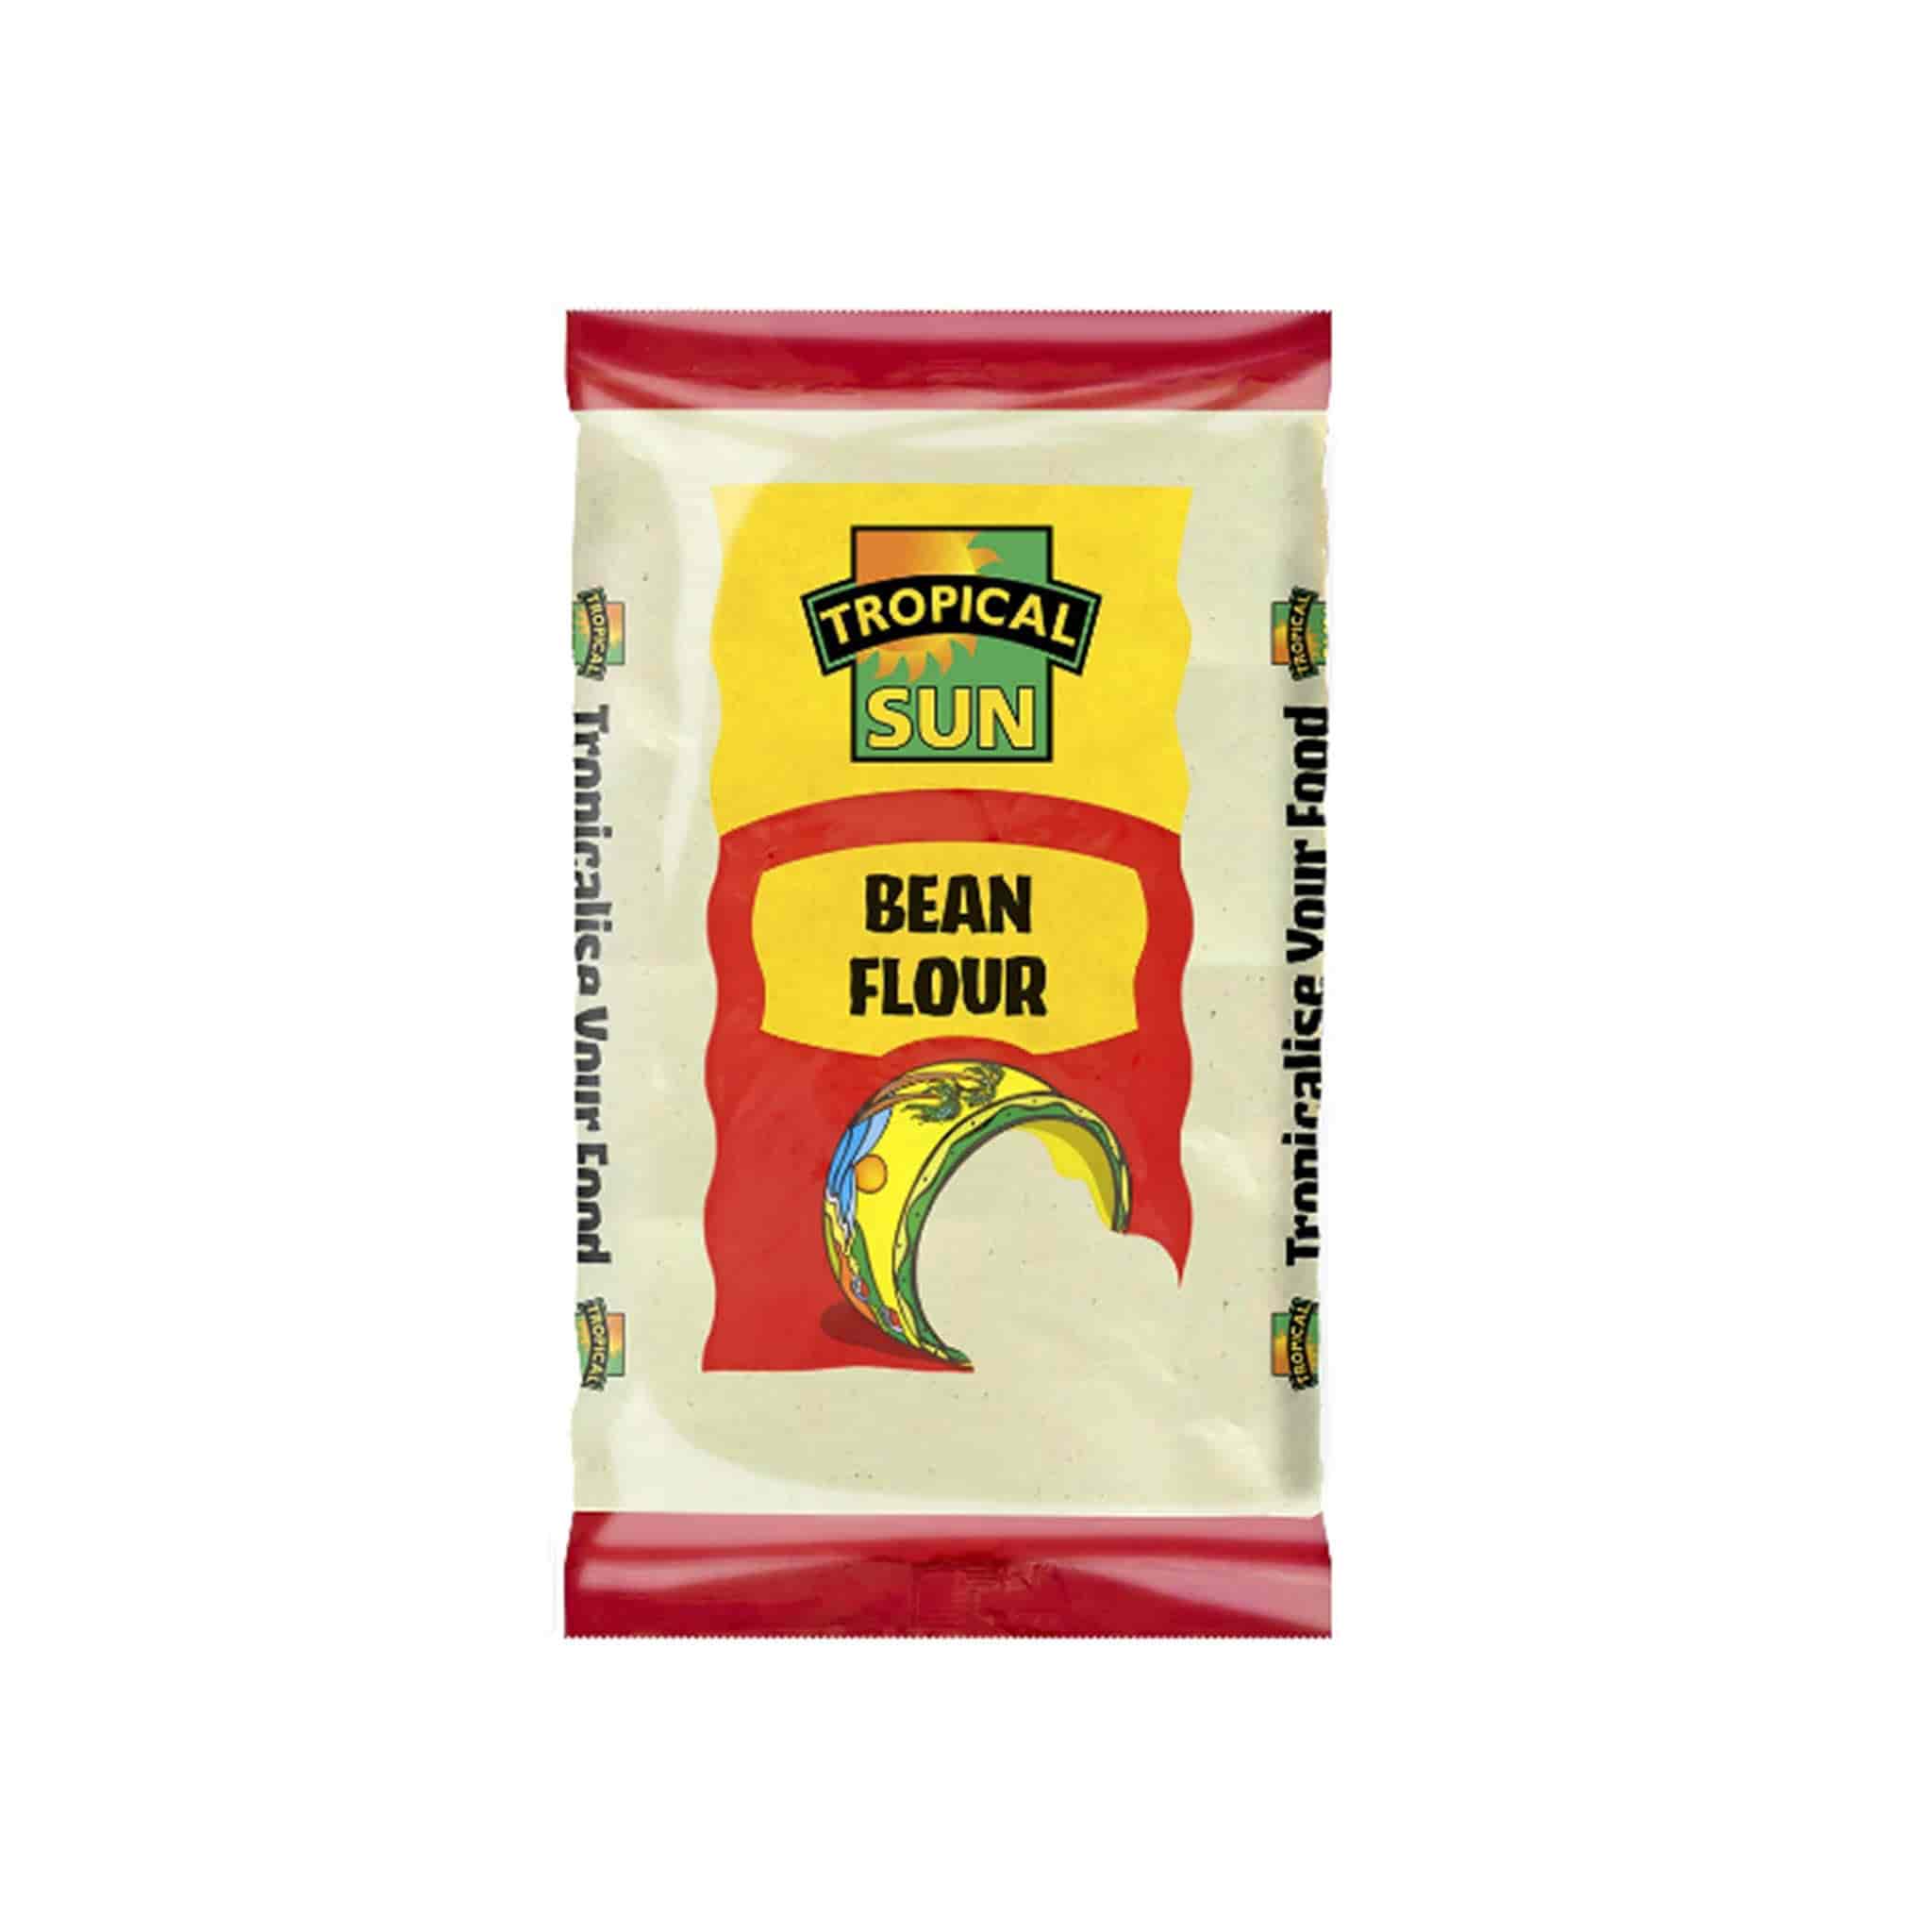 Tropical Sun Bean Flour, 400g